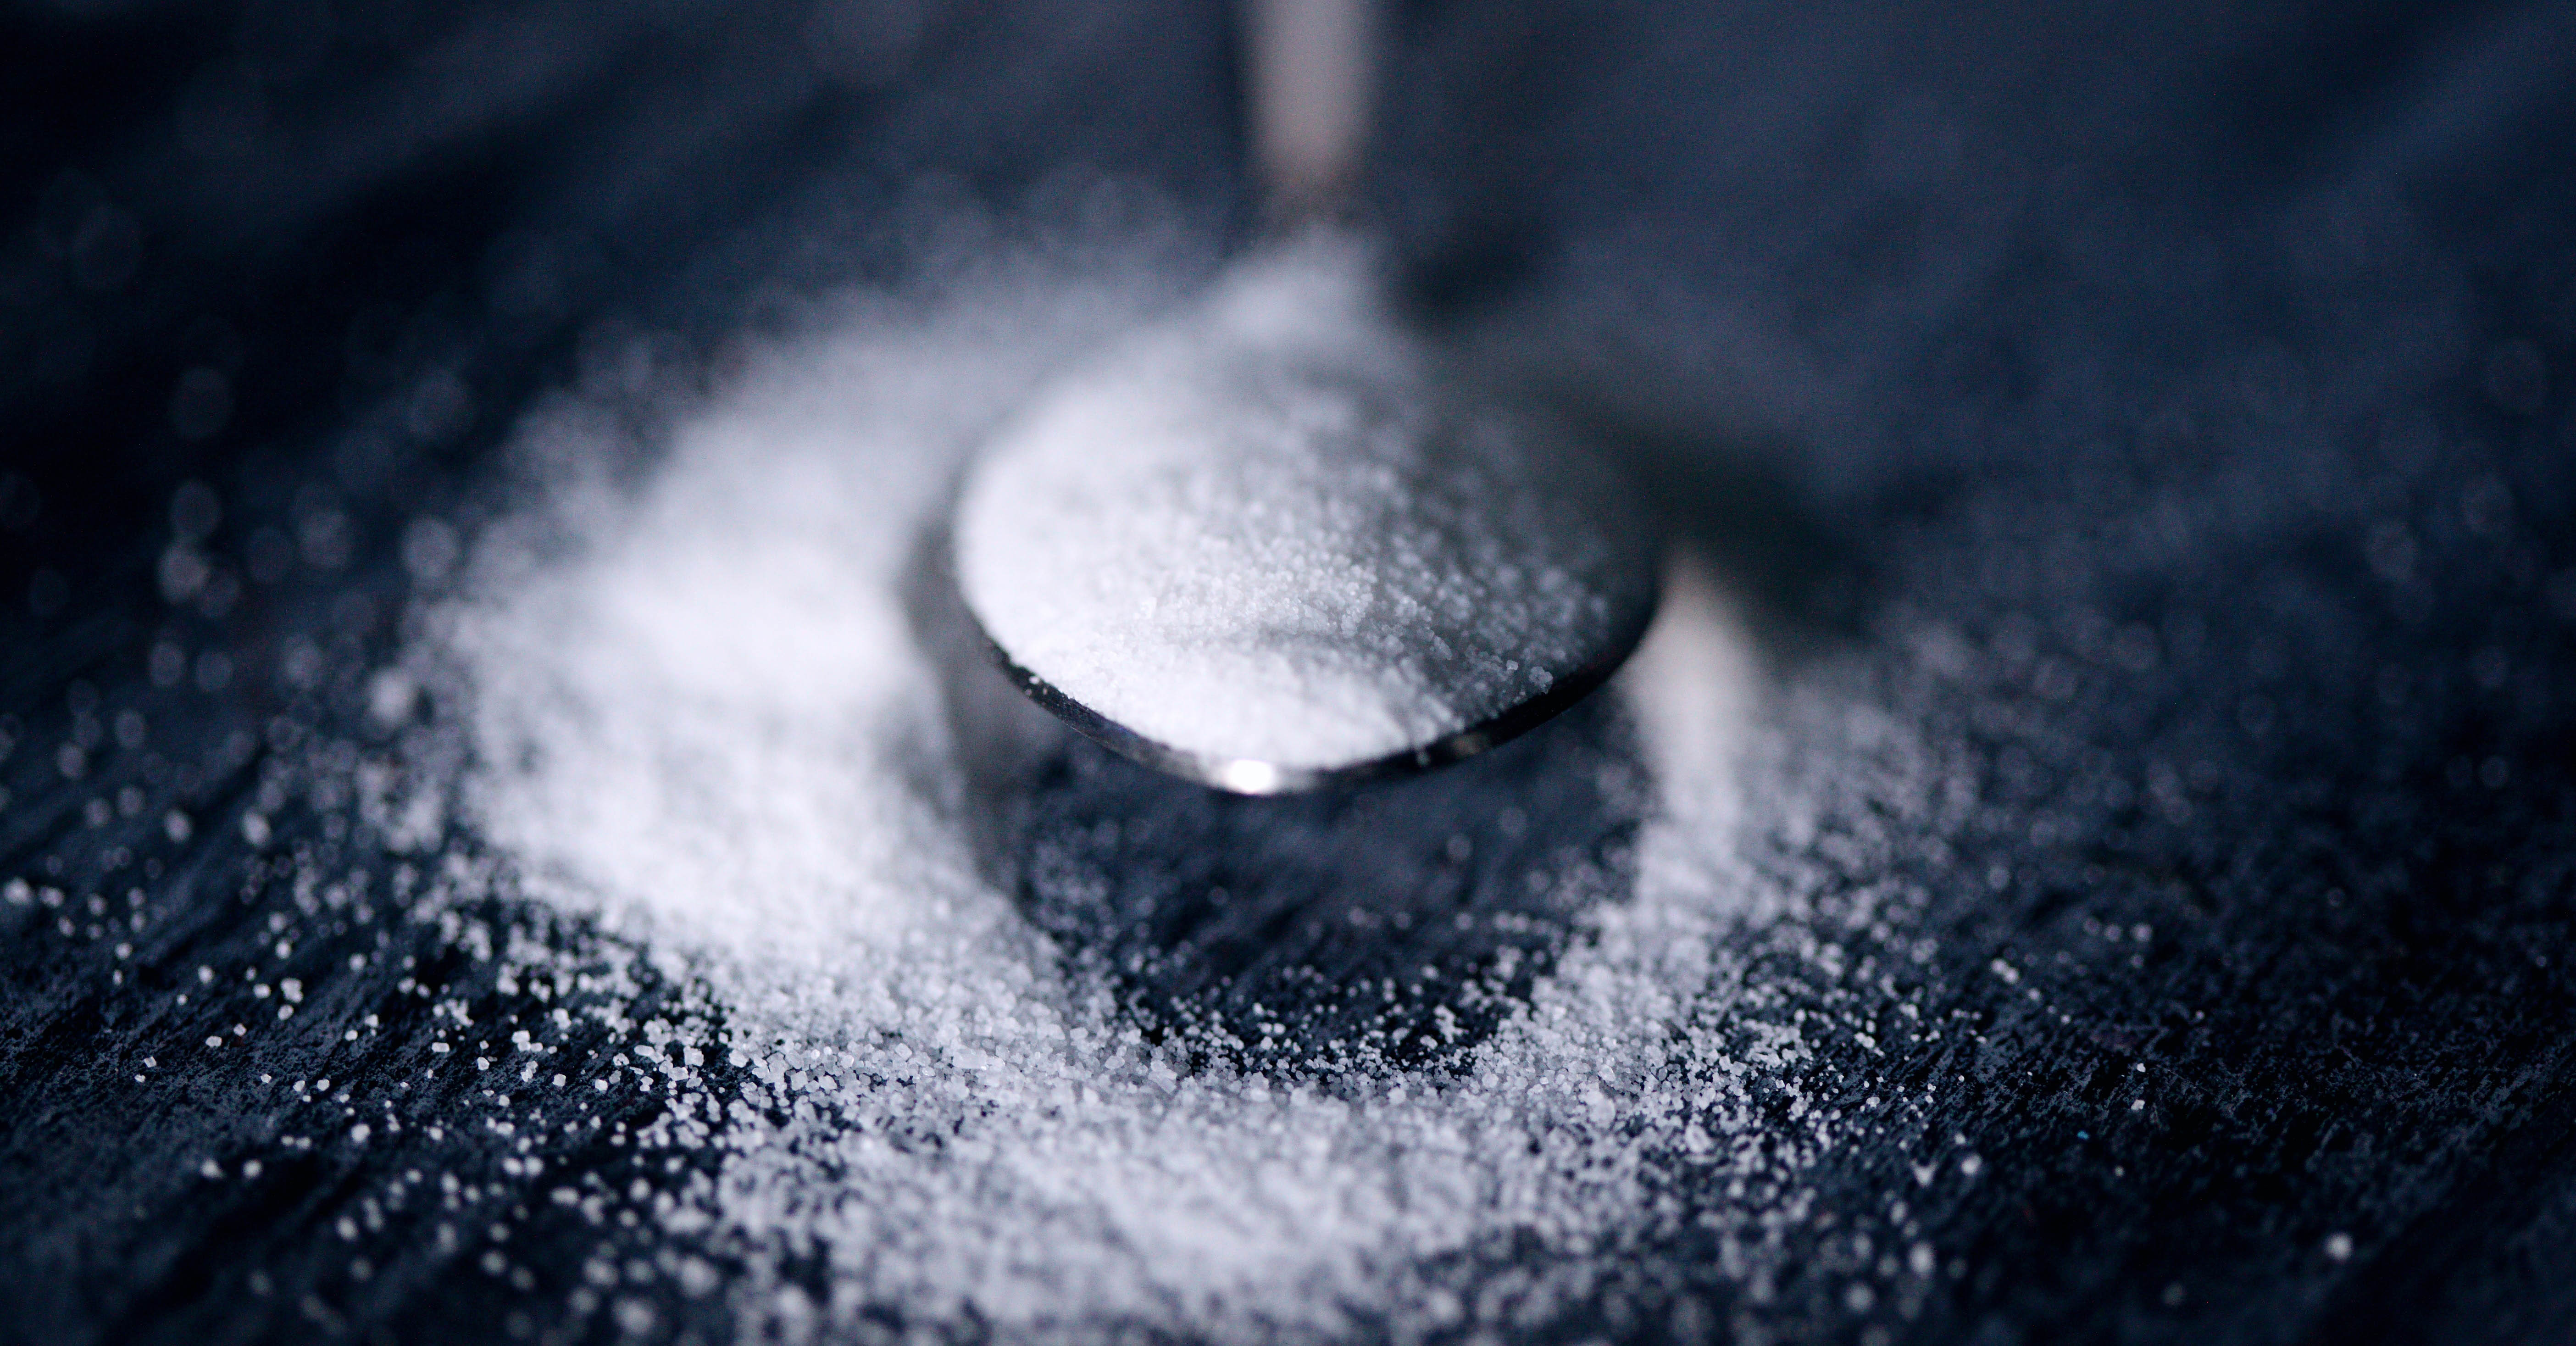 Sugar substitute aspartame on a spoon.